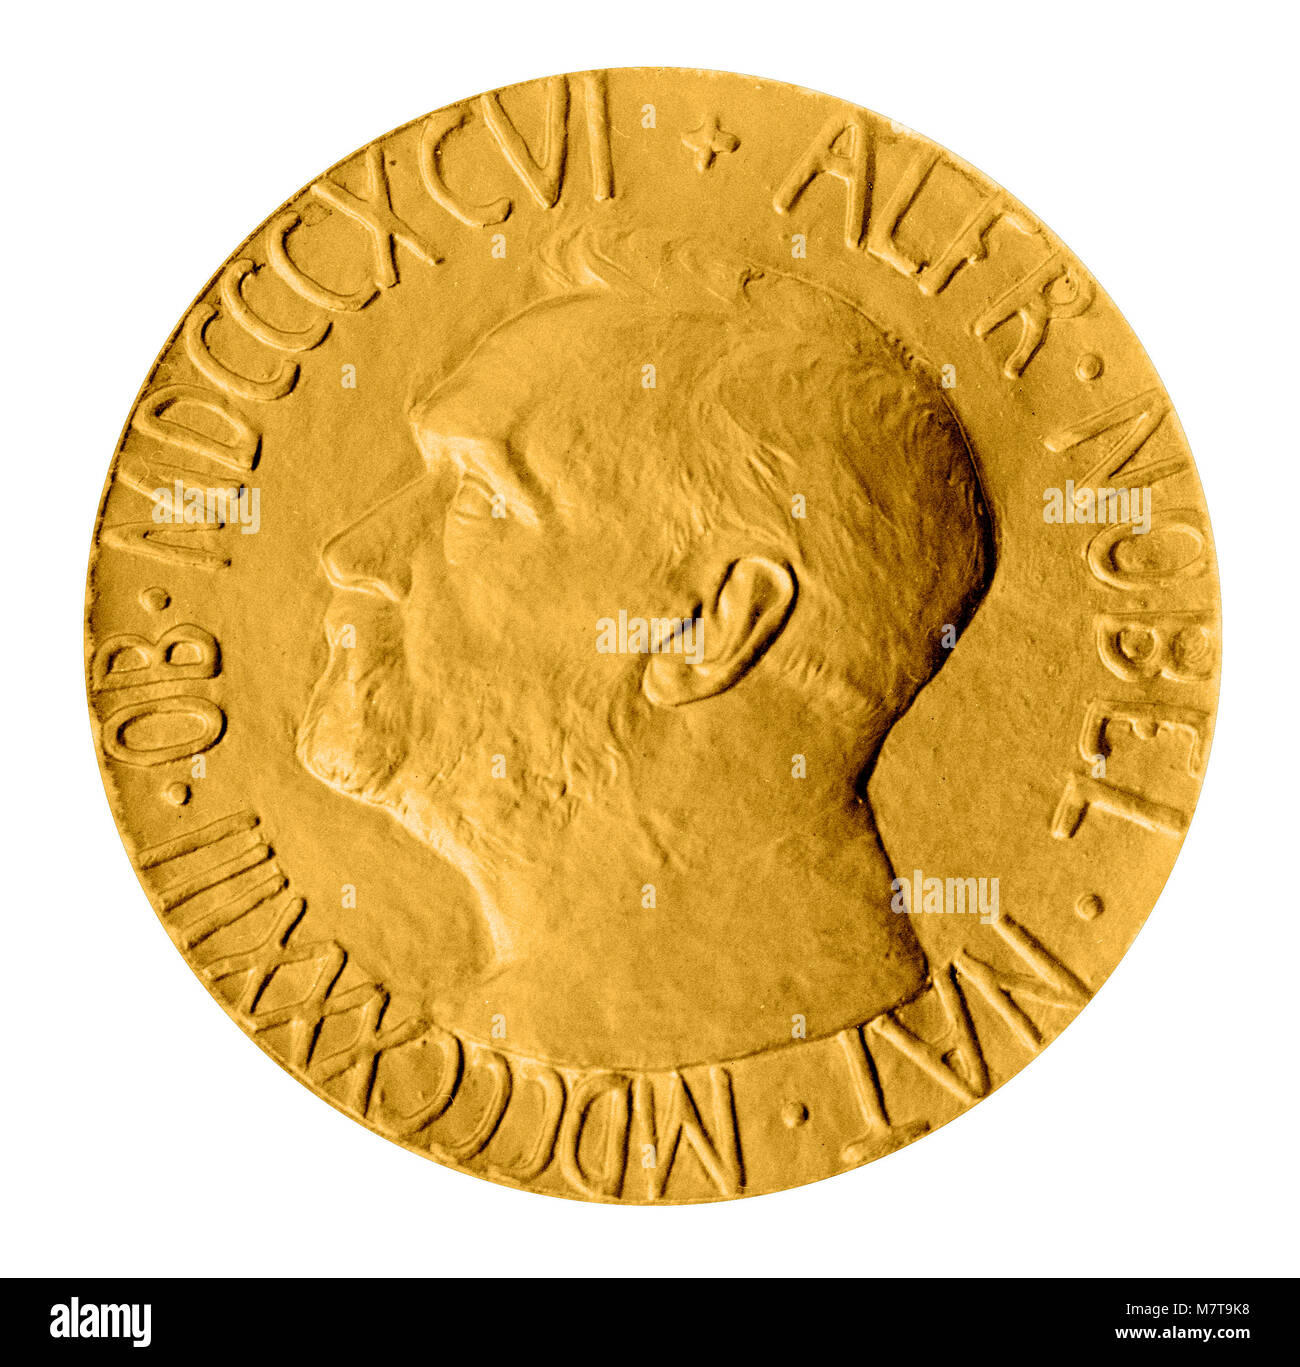 Replica Nobel Peace Prize Medal Stock Photo